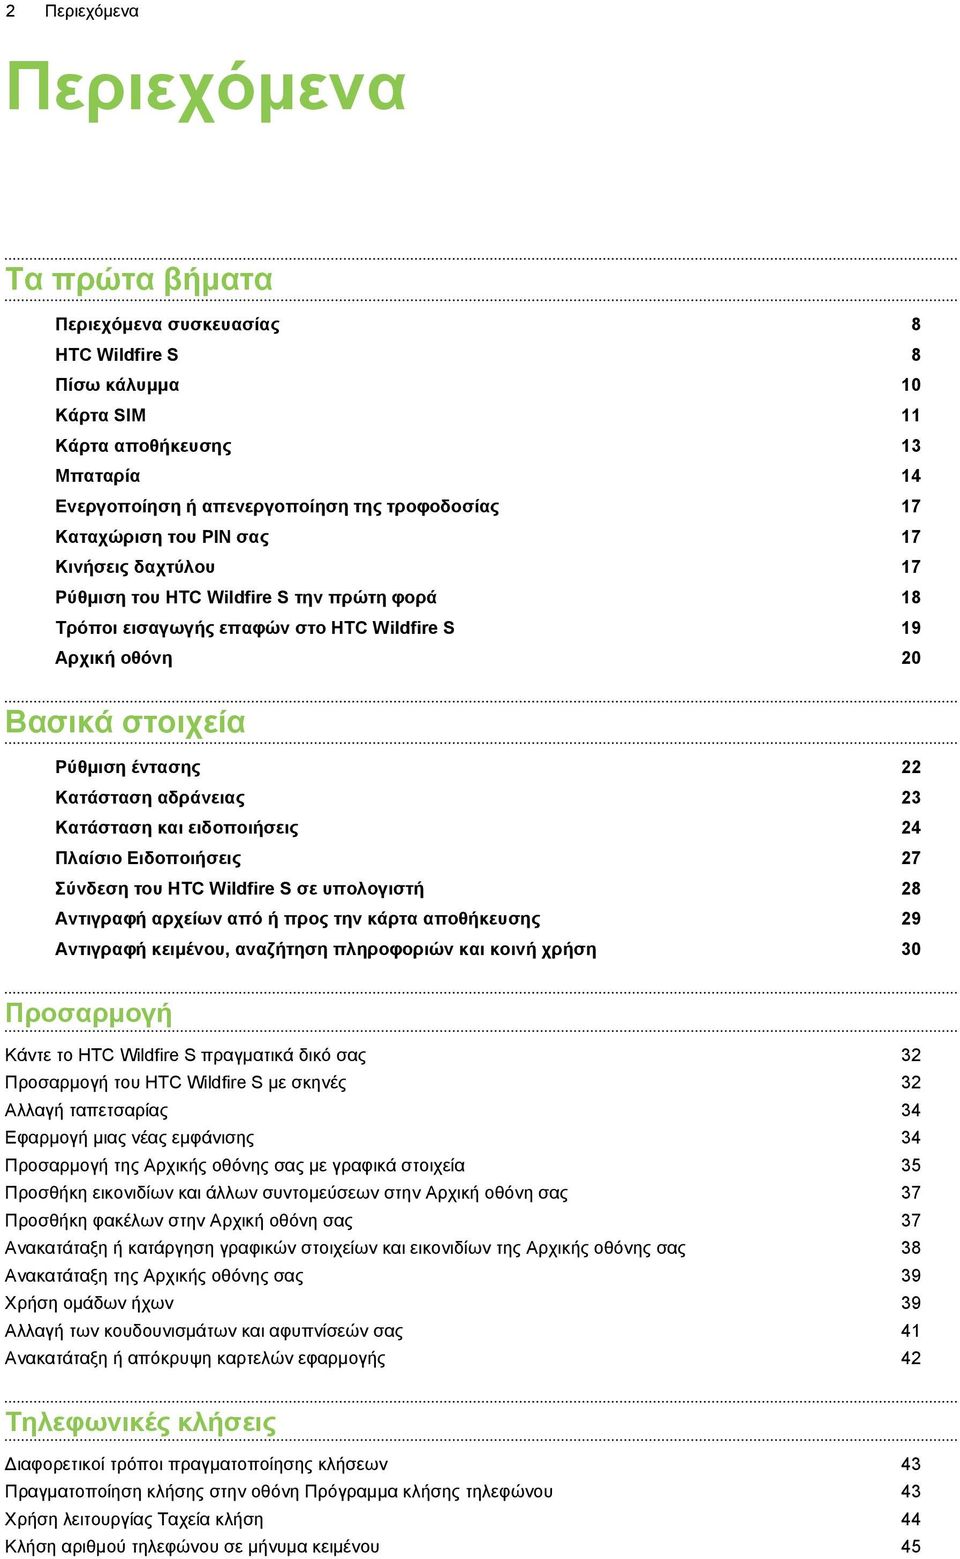 αδράνειας 23 Κατάσταση και ειδοποιήσεις 24 Πλαίσιο Ειδοποιήσεις 27 Σύνδεση του HTC Wildfire S σε υπολογιστή 28 Αντιγραφή αρχείων από ή προς την κάρτα αποθήκευσης 29 Αντιγραφή κειμένου, αναζήτηση